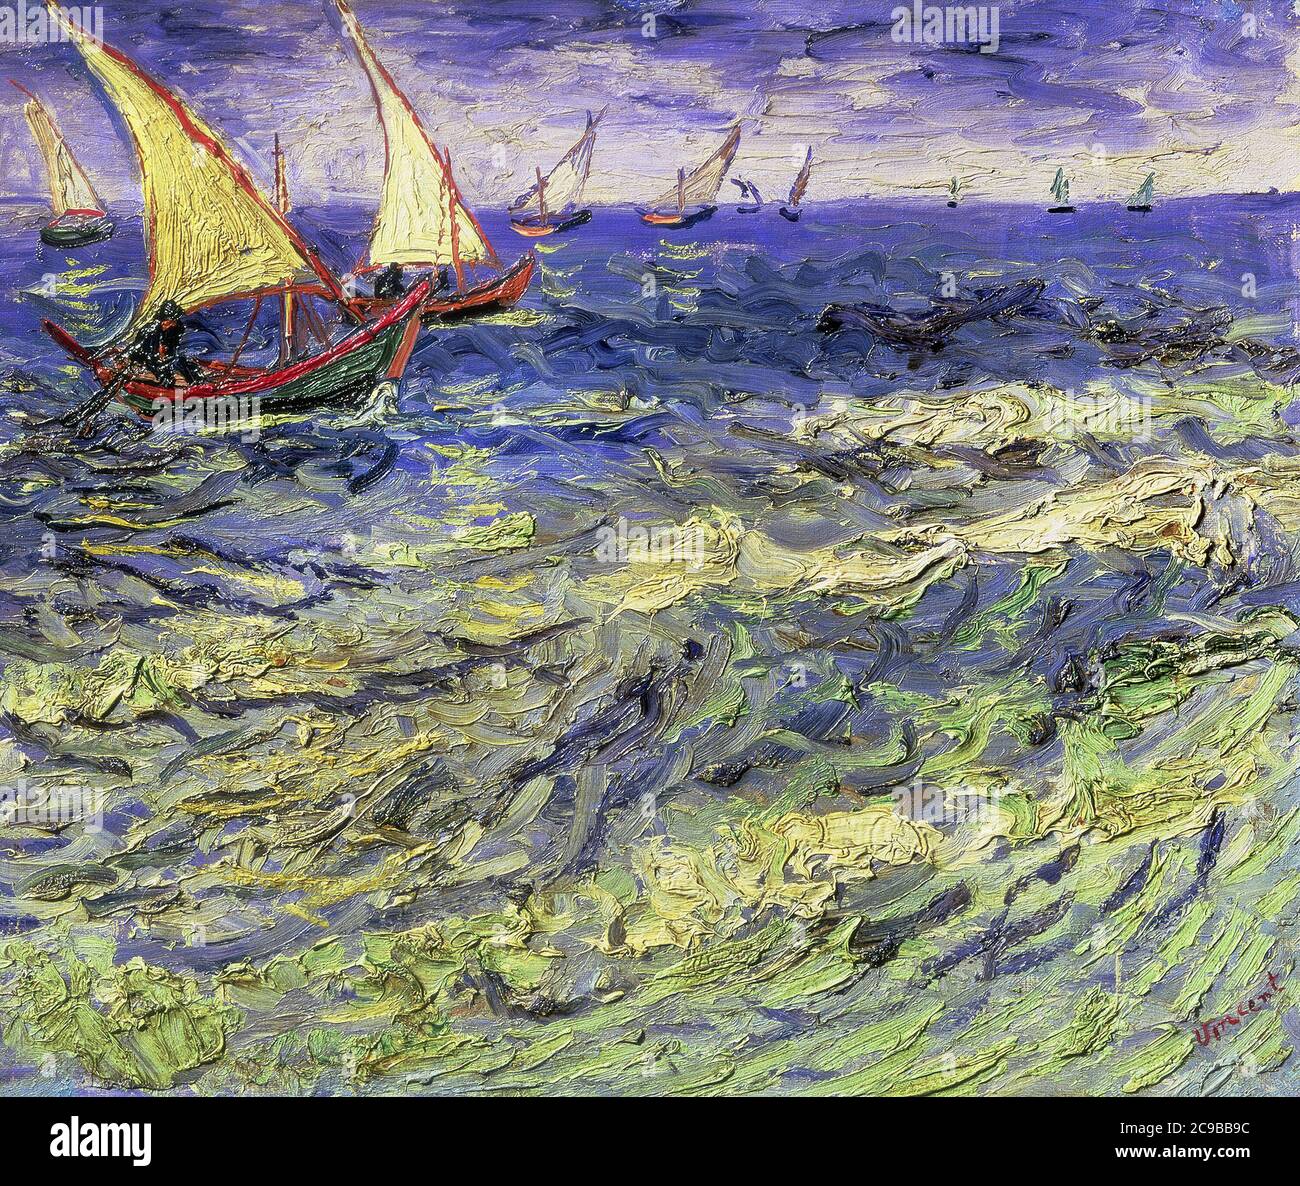 Bateaux de pêche en mer par Vincent Van Gogh 1888. Musée Pouchkine à Moscou, Russie Banque D'Images